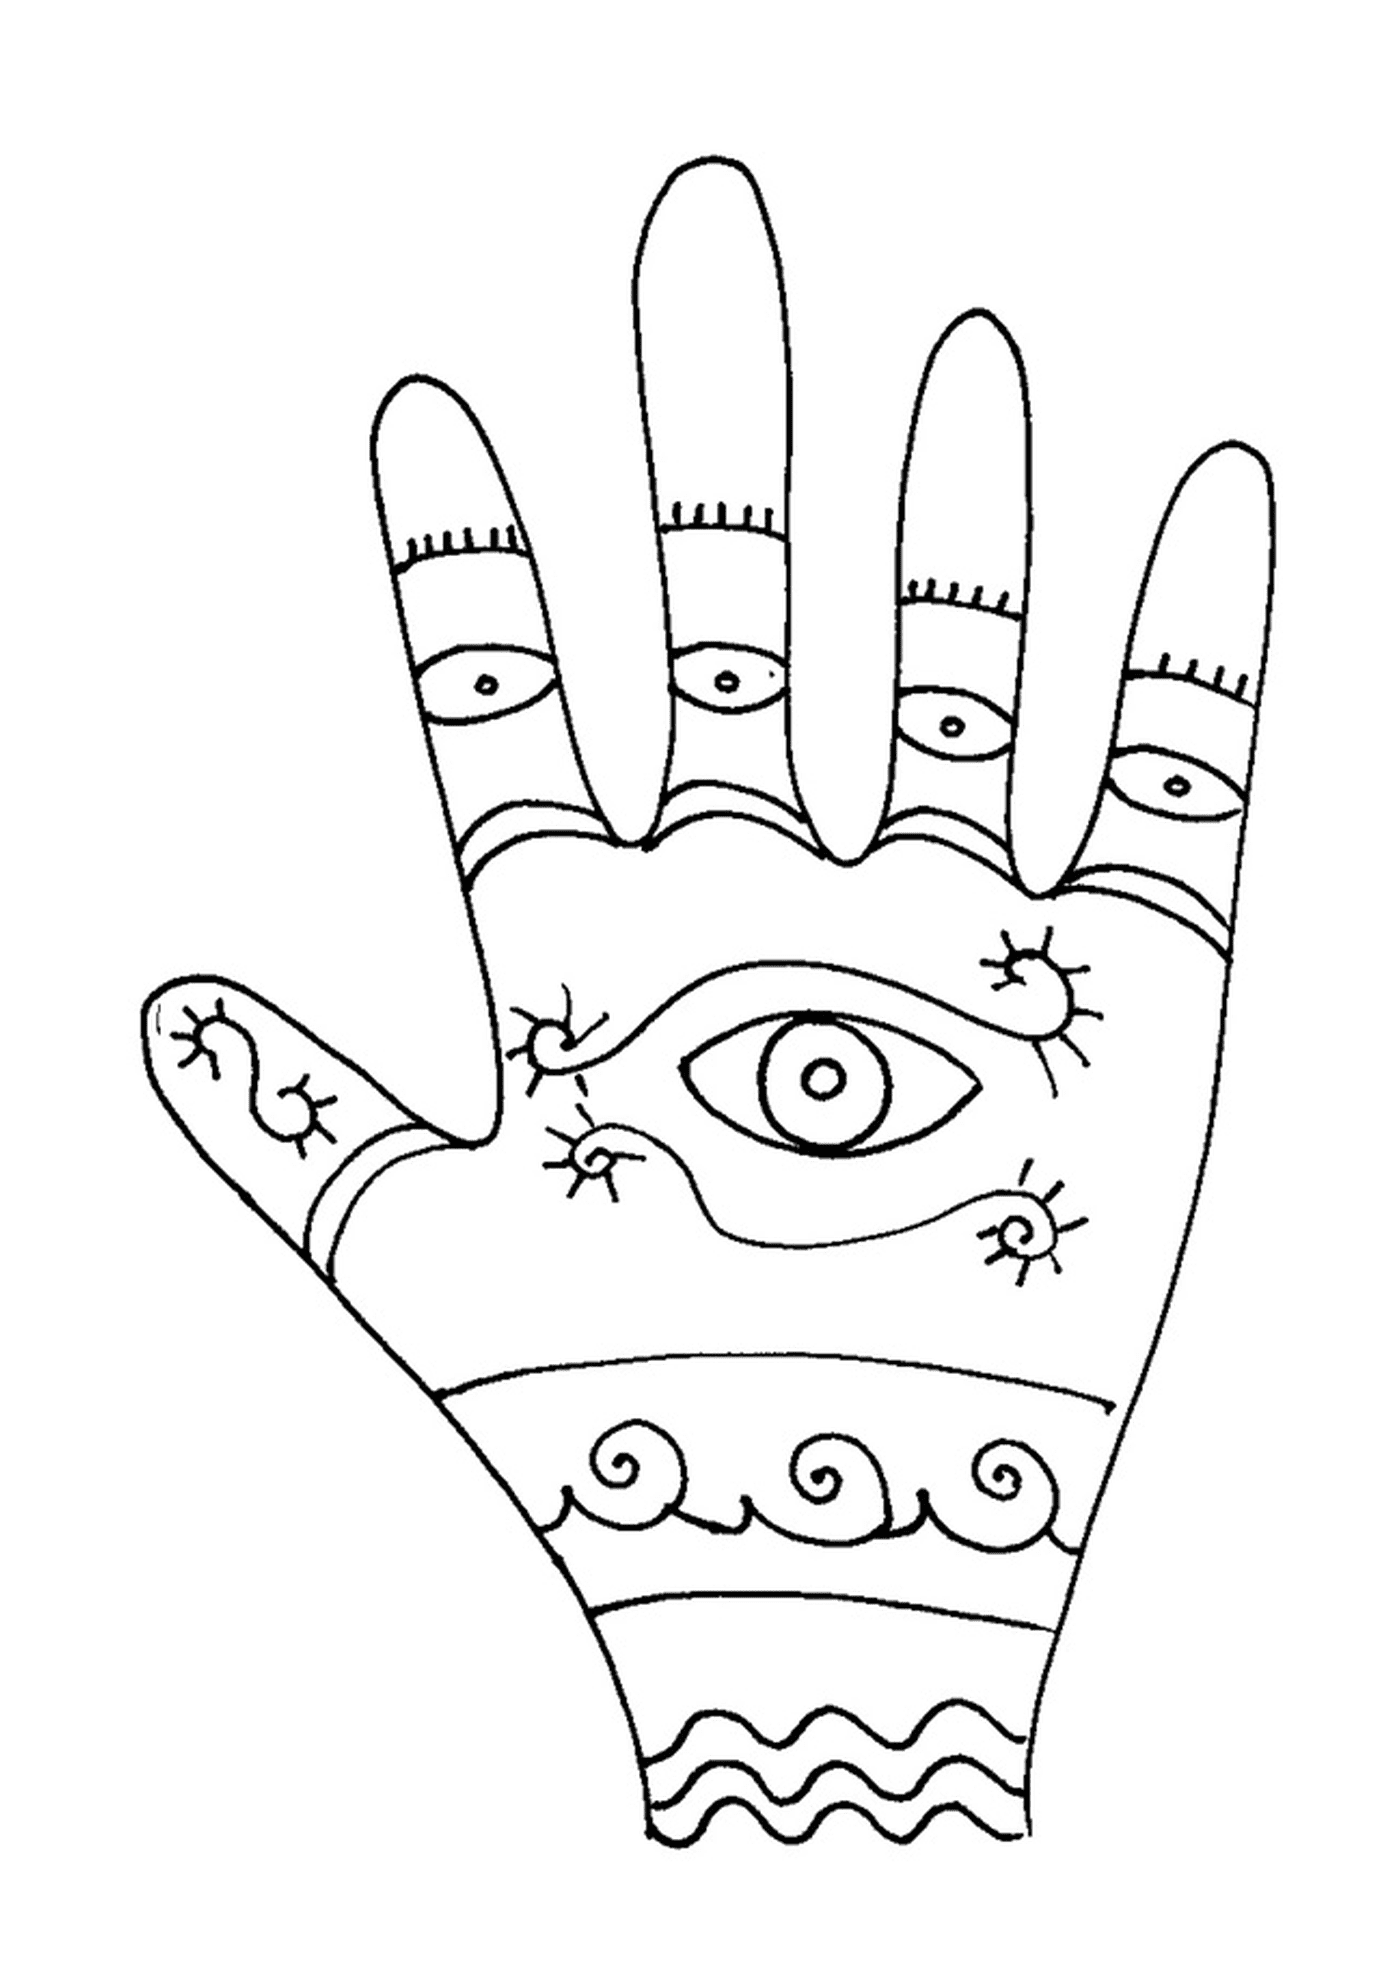  Mandala misterioso esoterico mano 